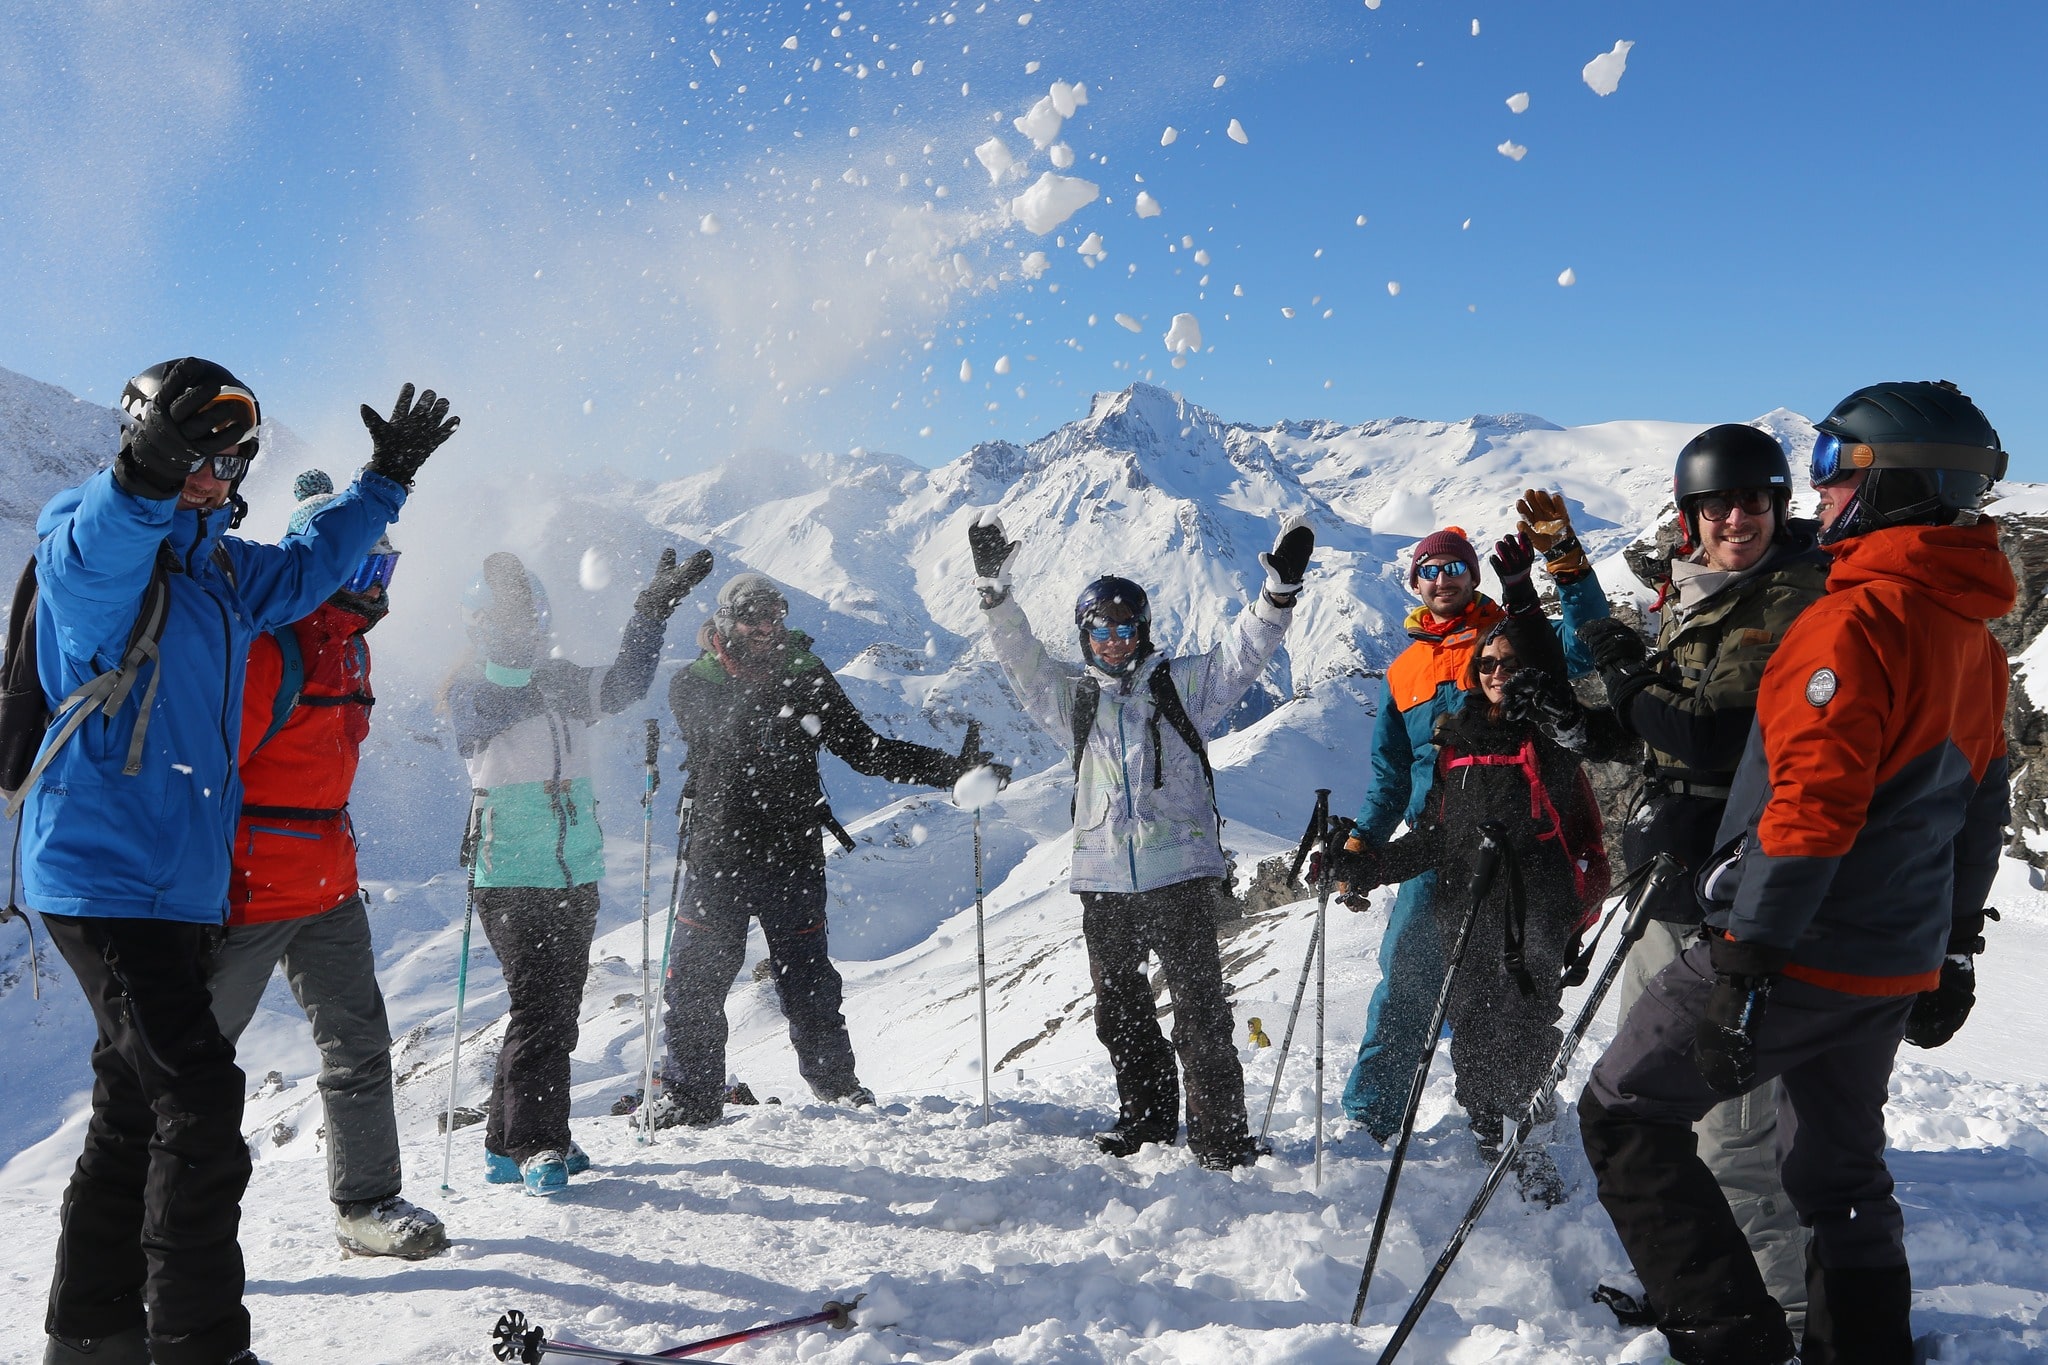 Val Cenis ski resort in the French Alps